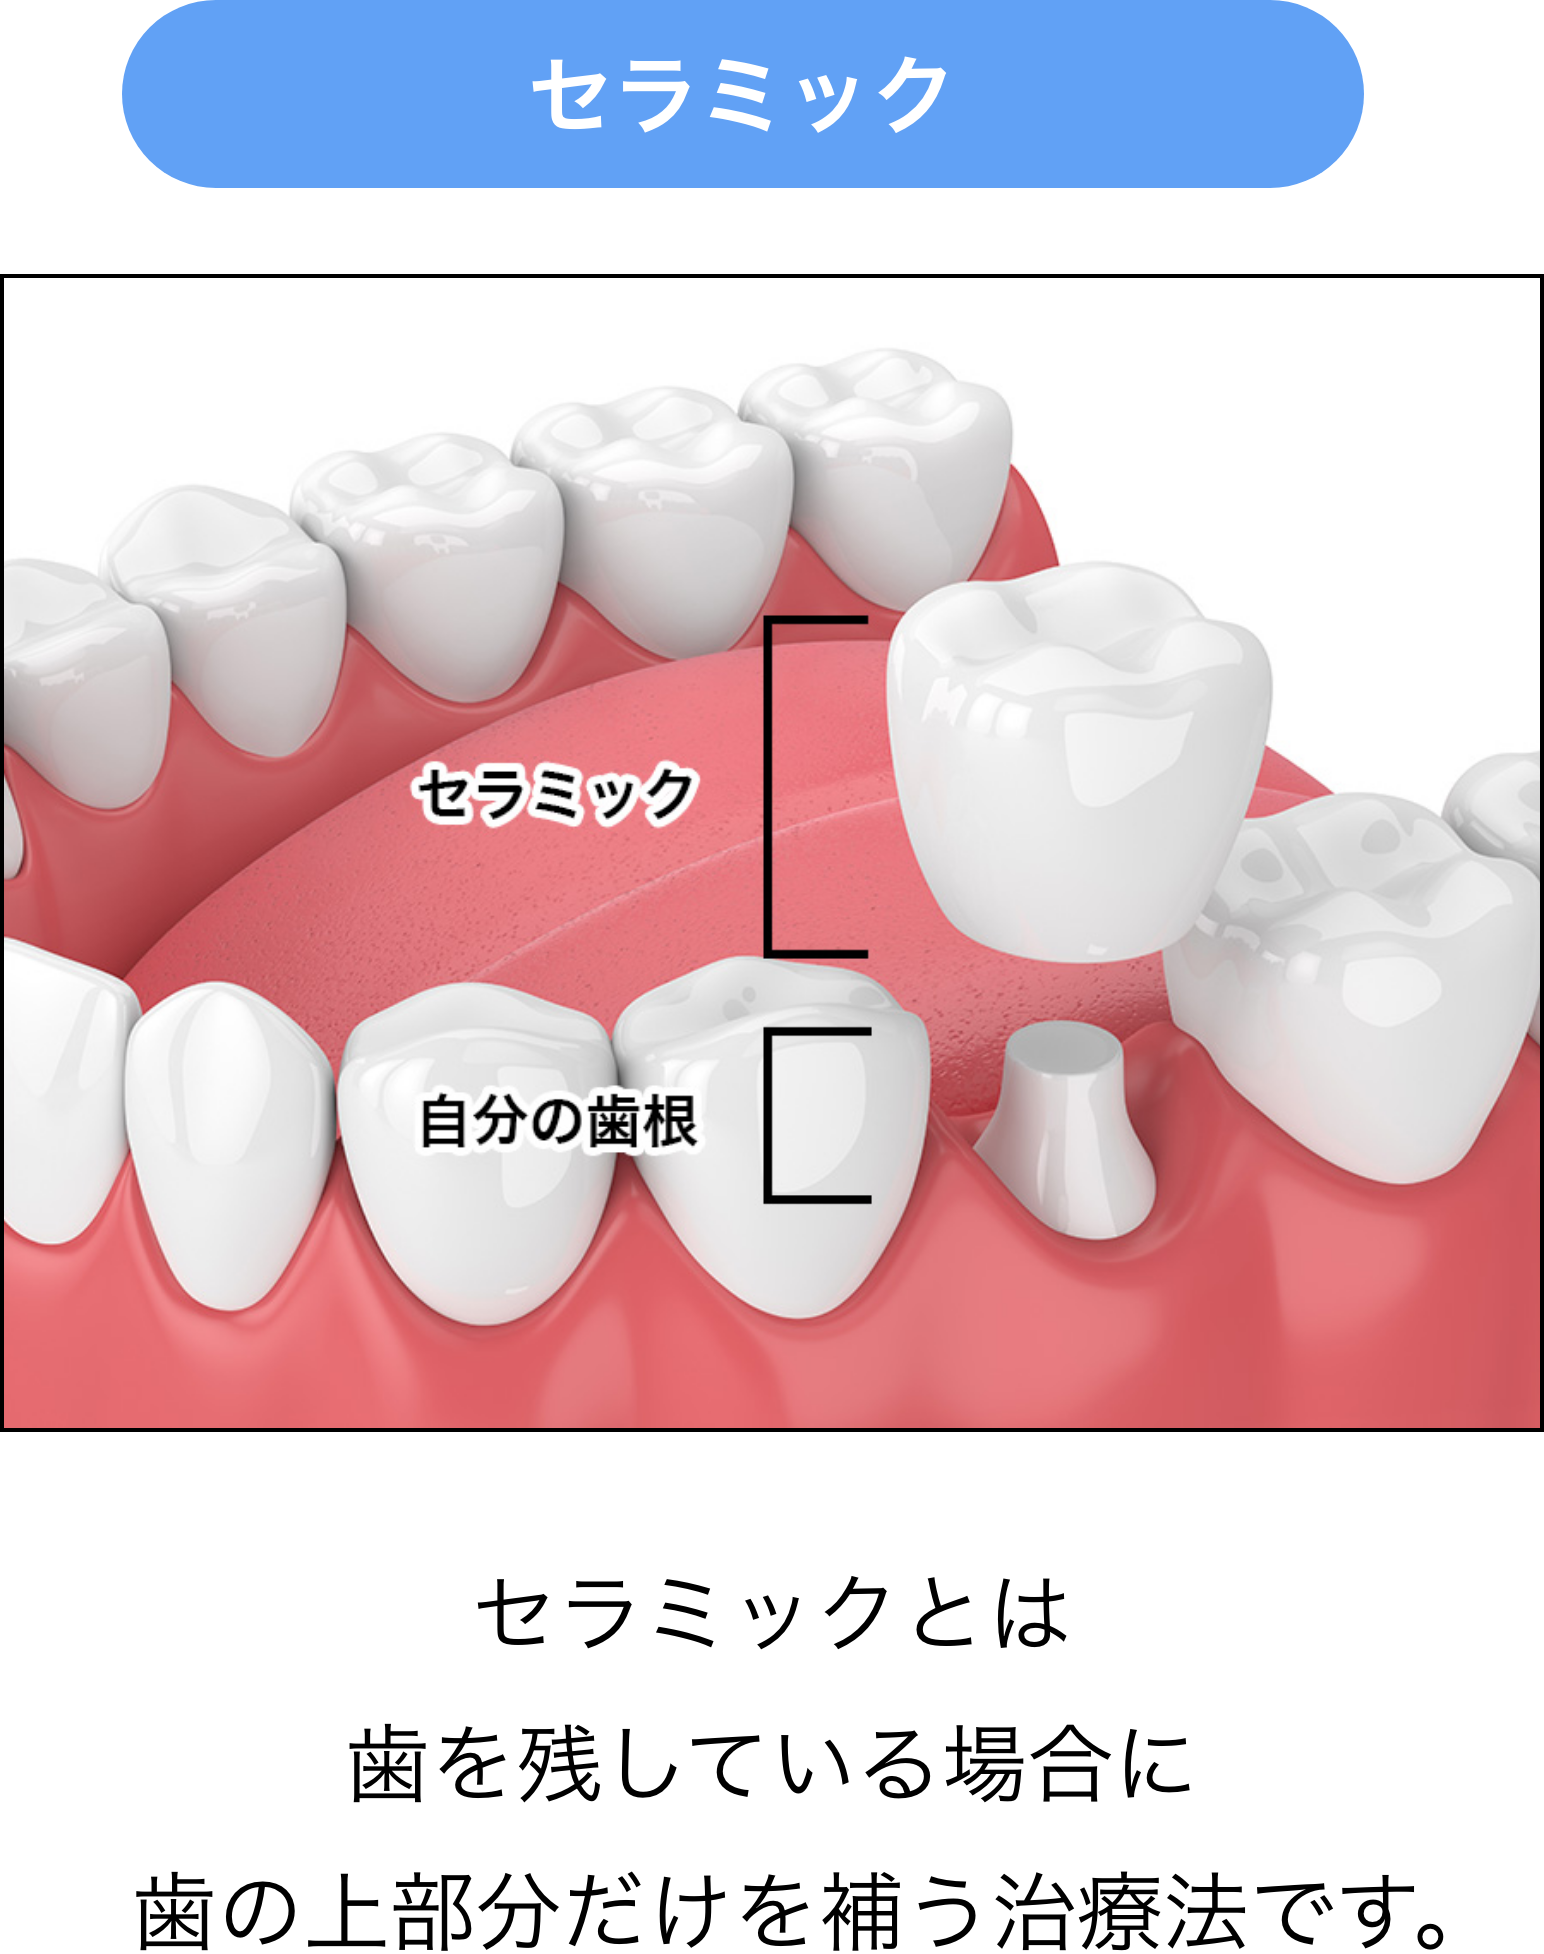 セラミックとは歯を残している場合に歯の上部分だけを補う治療法です。